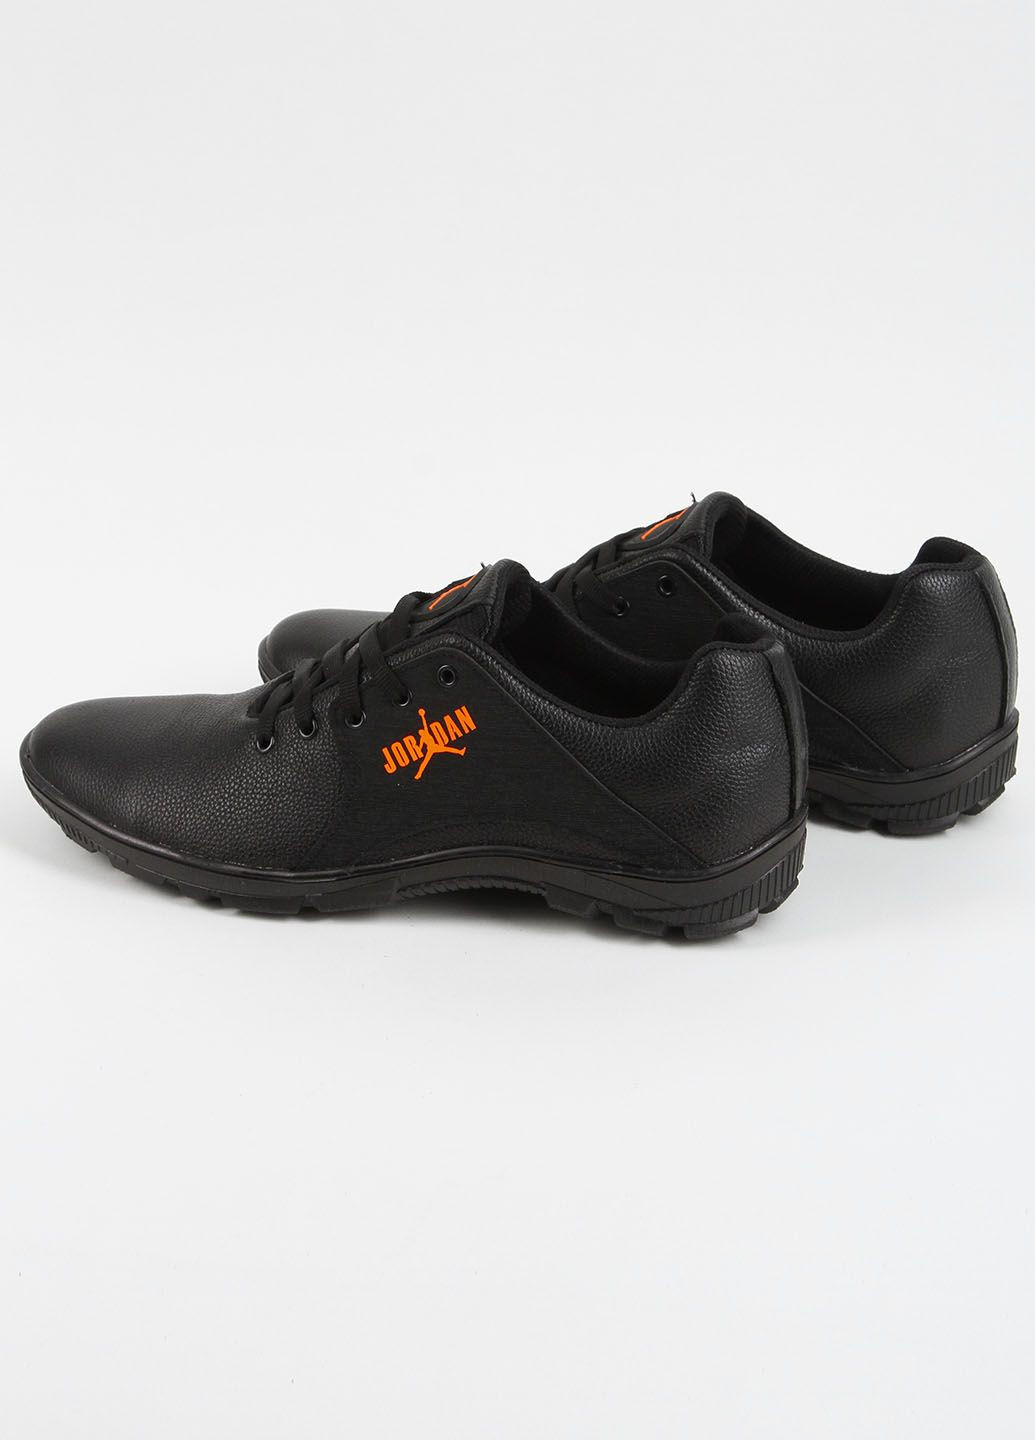 Черные кроссовки мужские кожаные 339502 Power